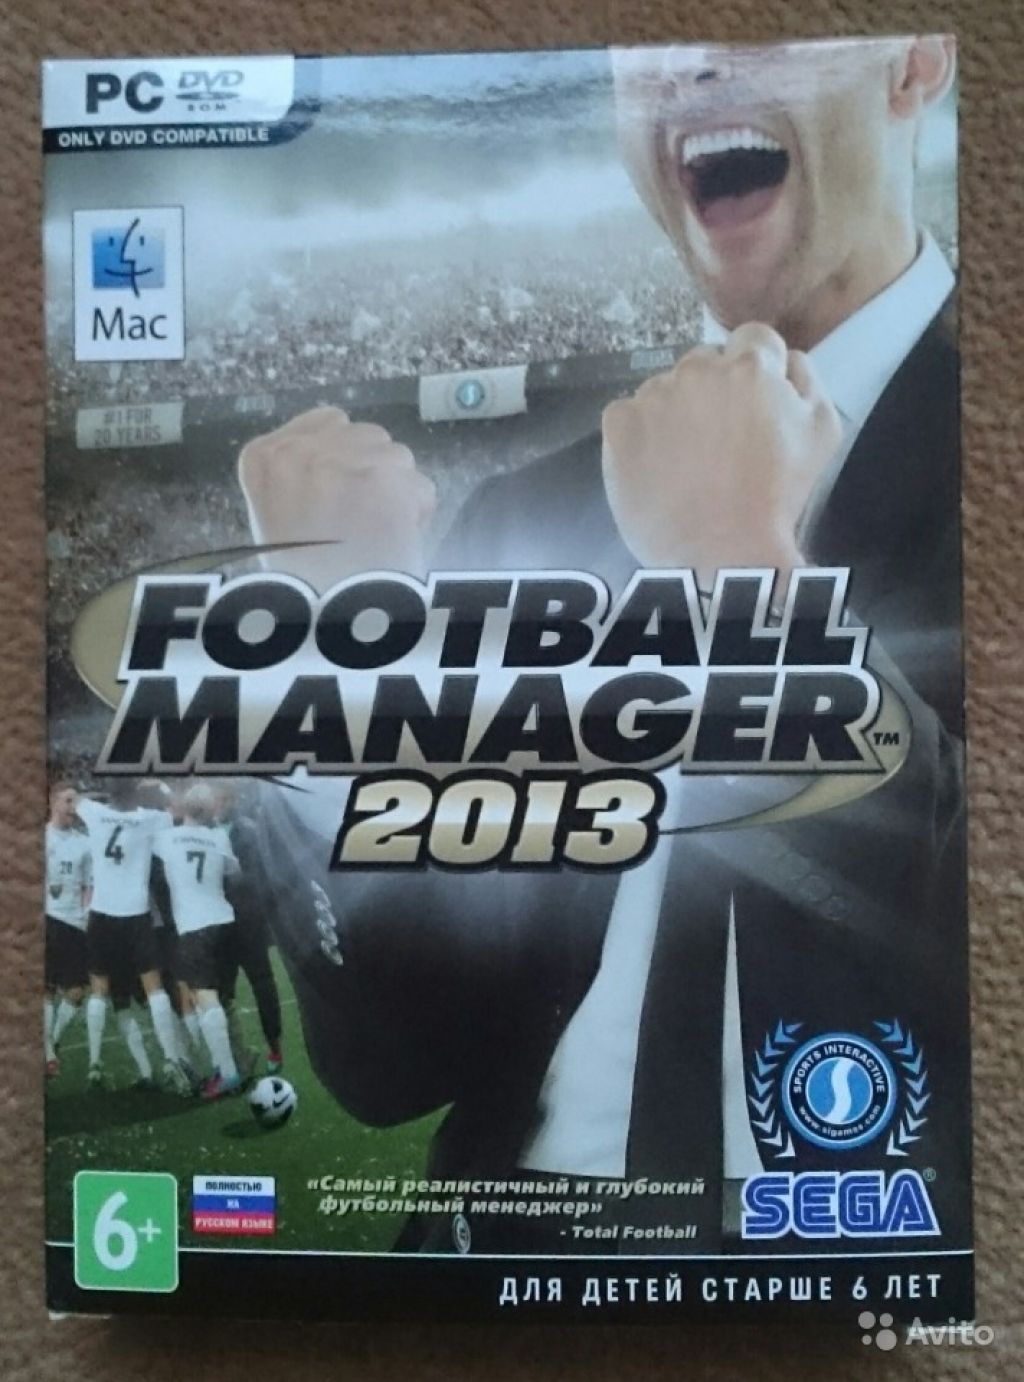 Коллекционное издание Football Manager 2013 в Москве. Фото 1